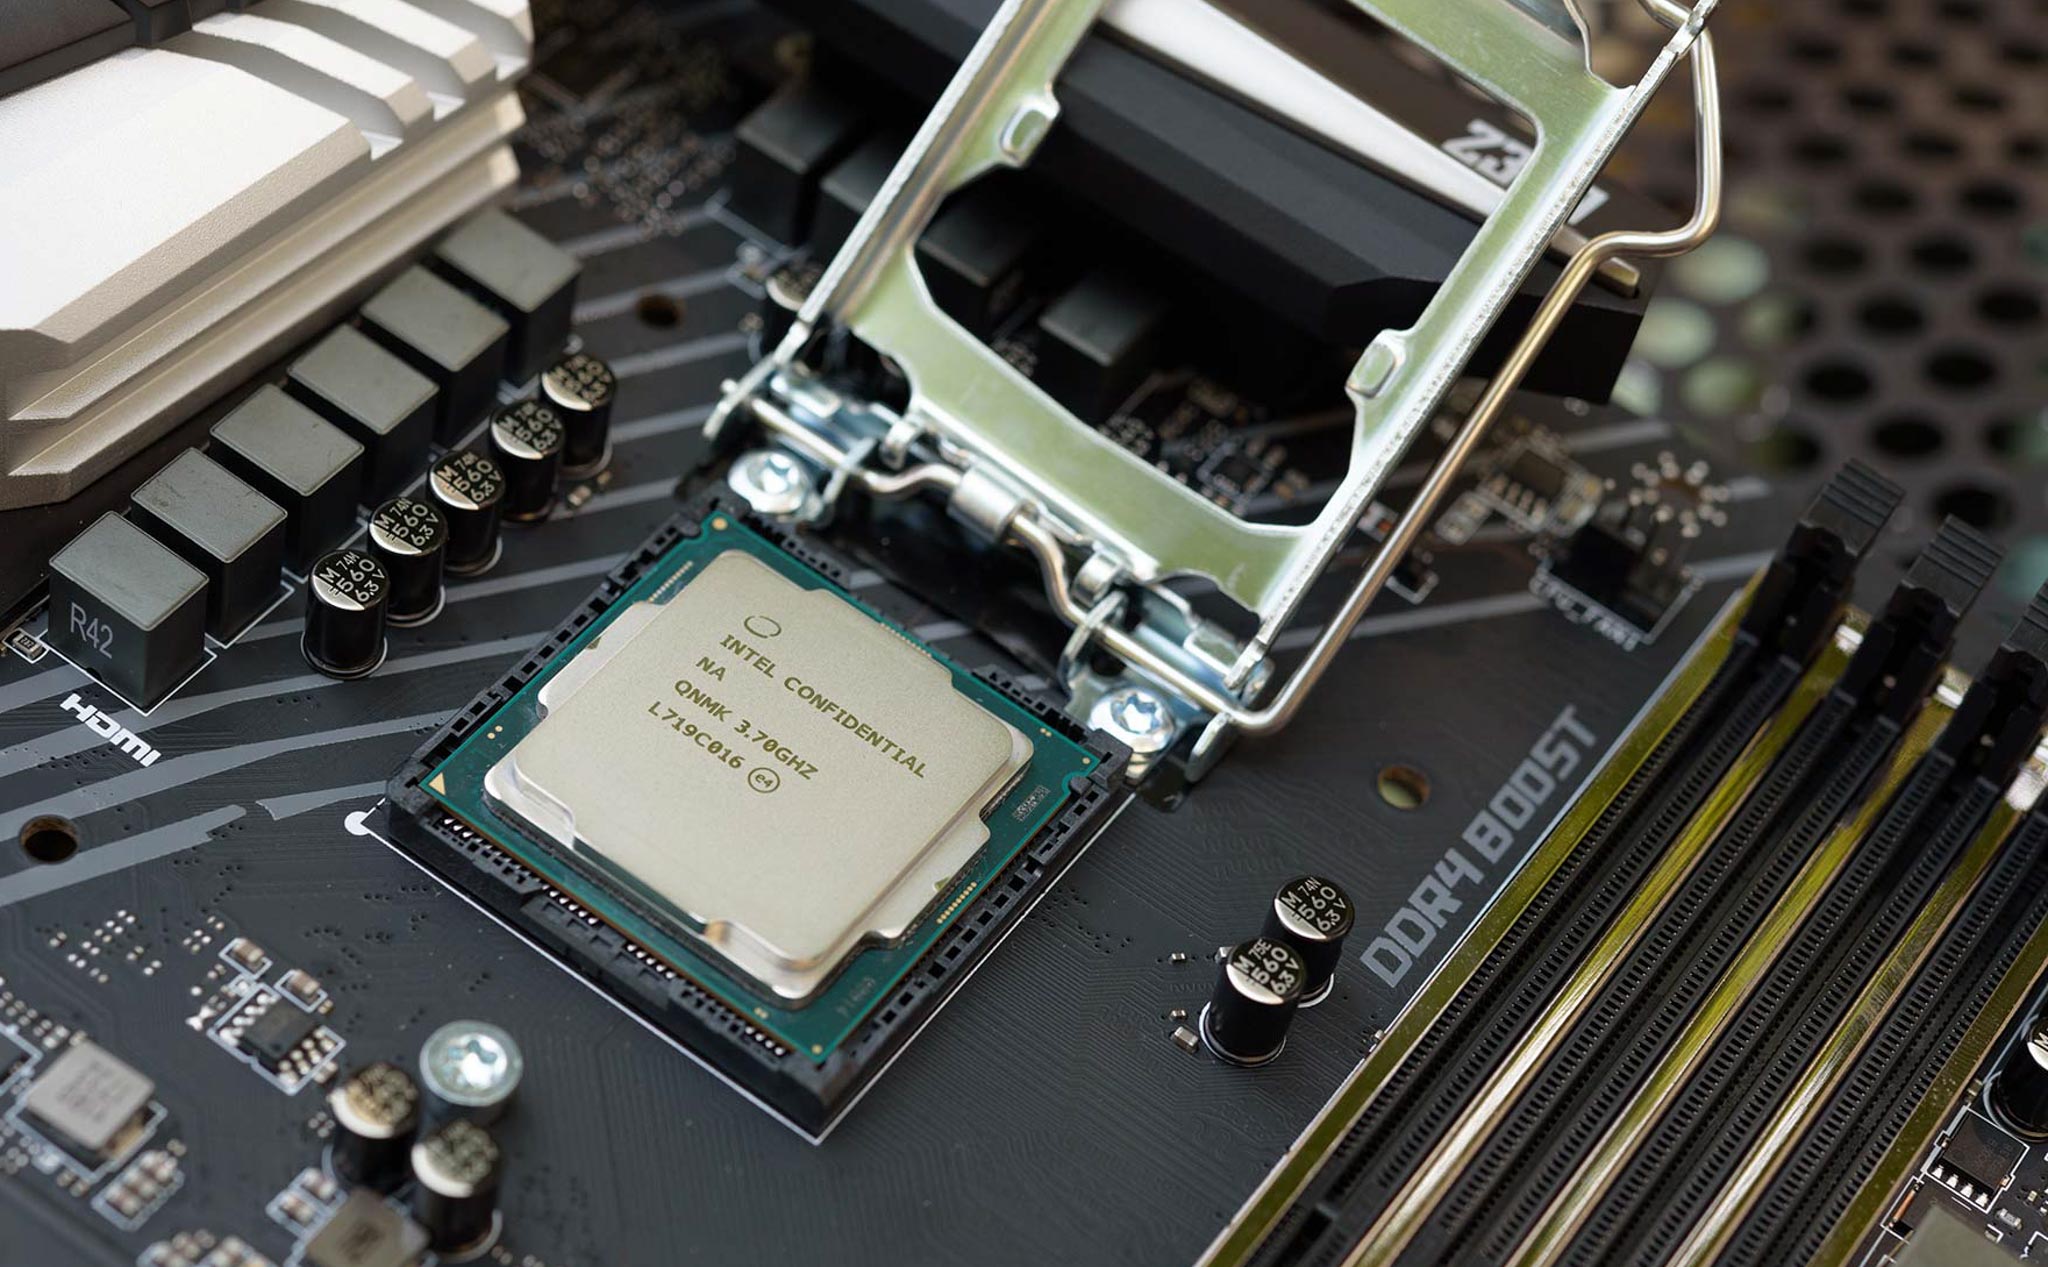 Intel xác nhận tình trạng khan hiếm CPU, đầu tư thêm 1 tỷ USD cho dây chuyền sản xuất 14 nm